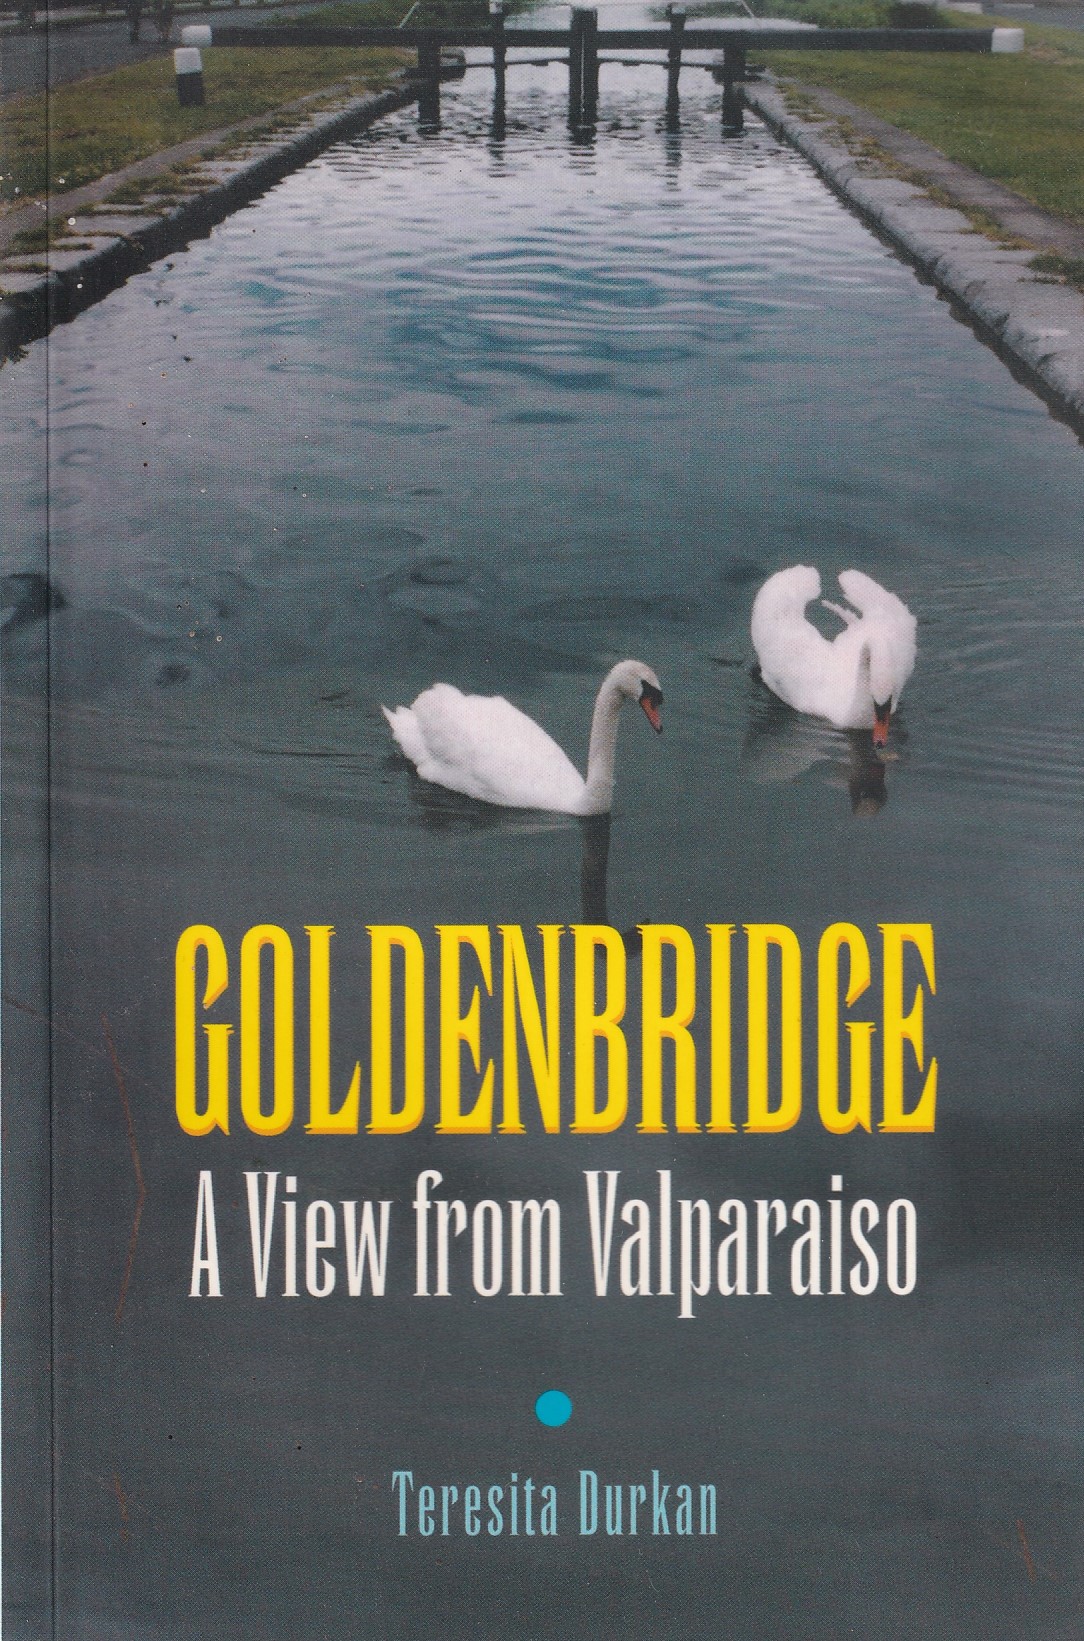 Goldenbridge: A View from Valparaiso by Teresita Durkan